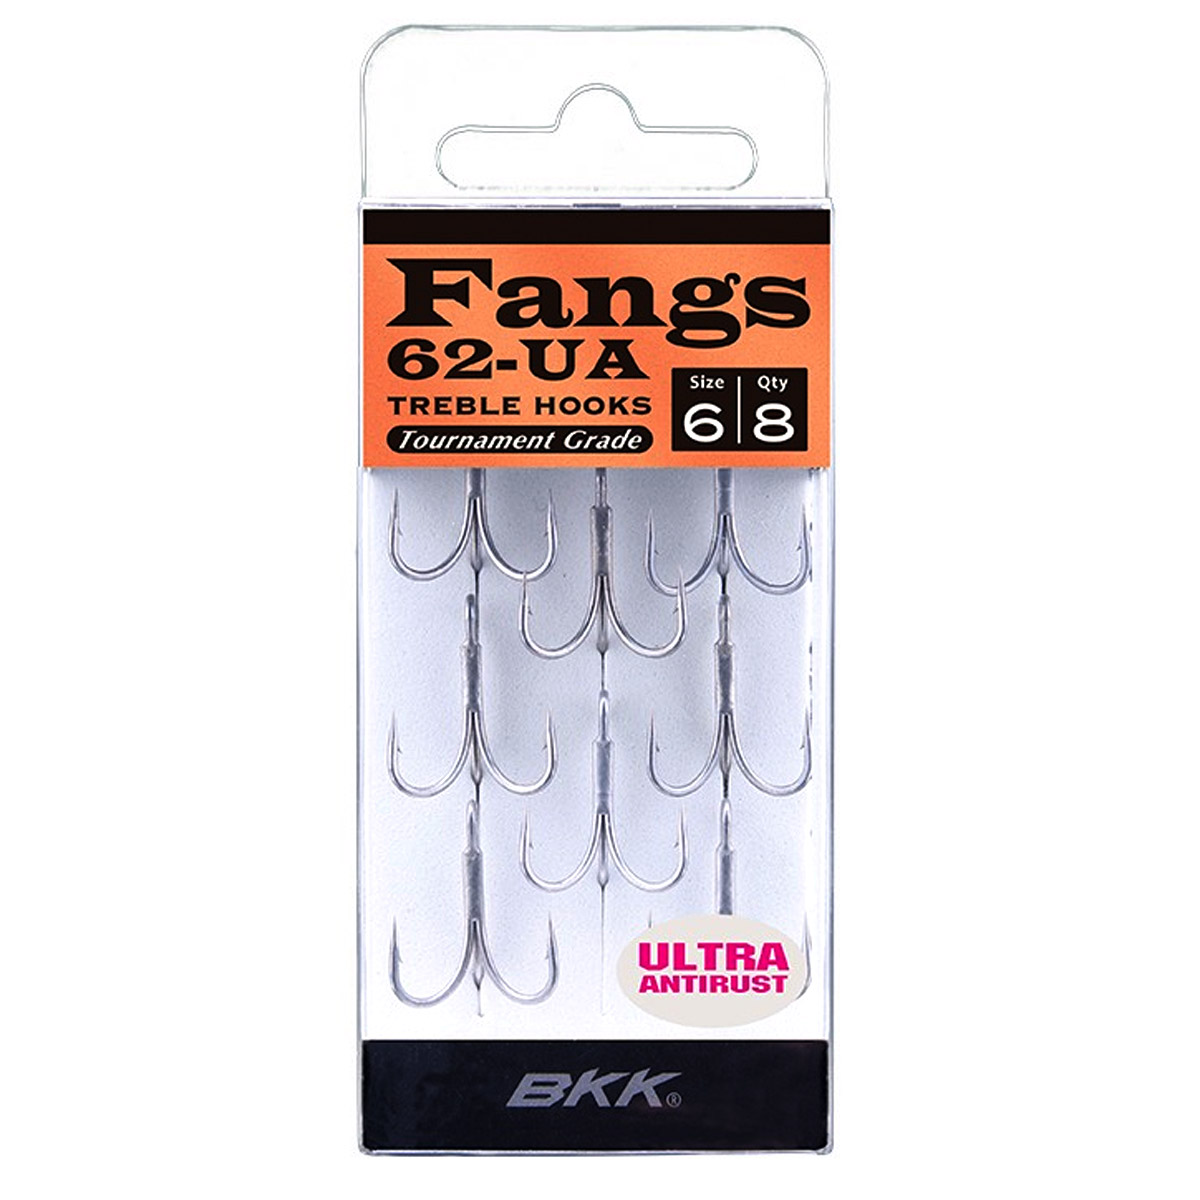 BKK Fangs-21 UA Treble Hooks